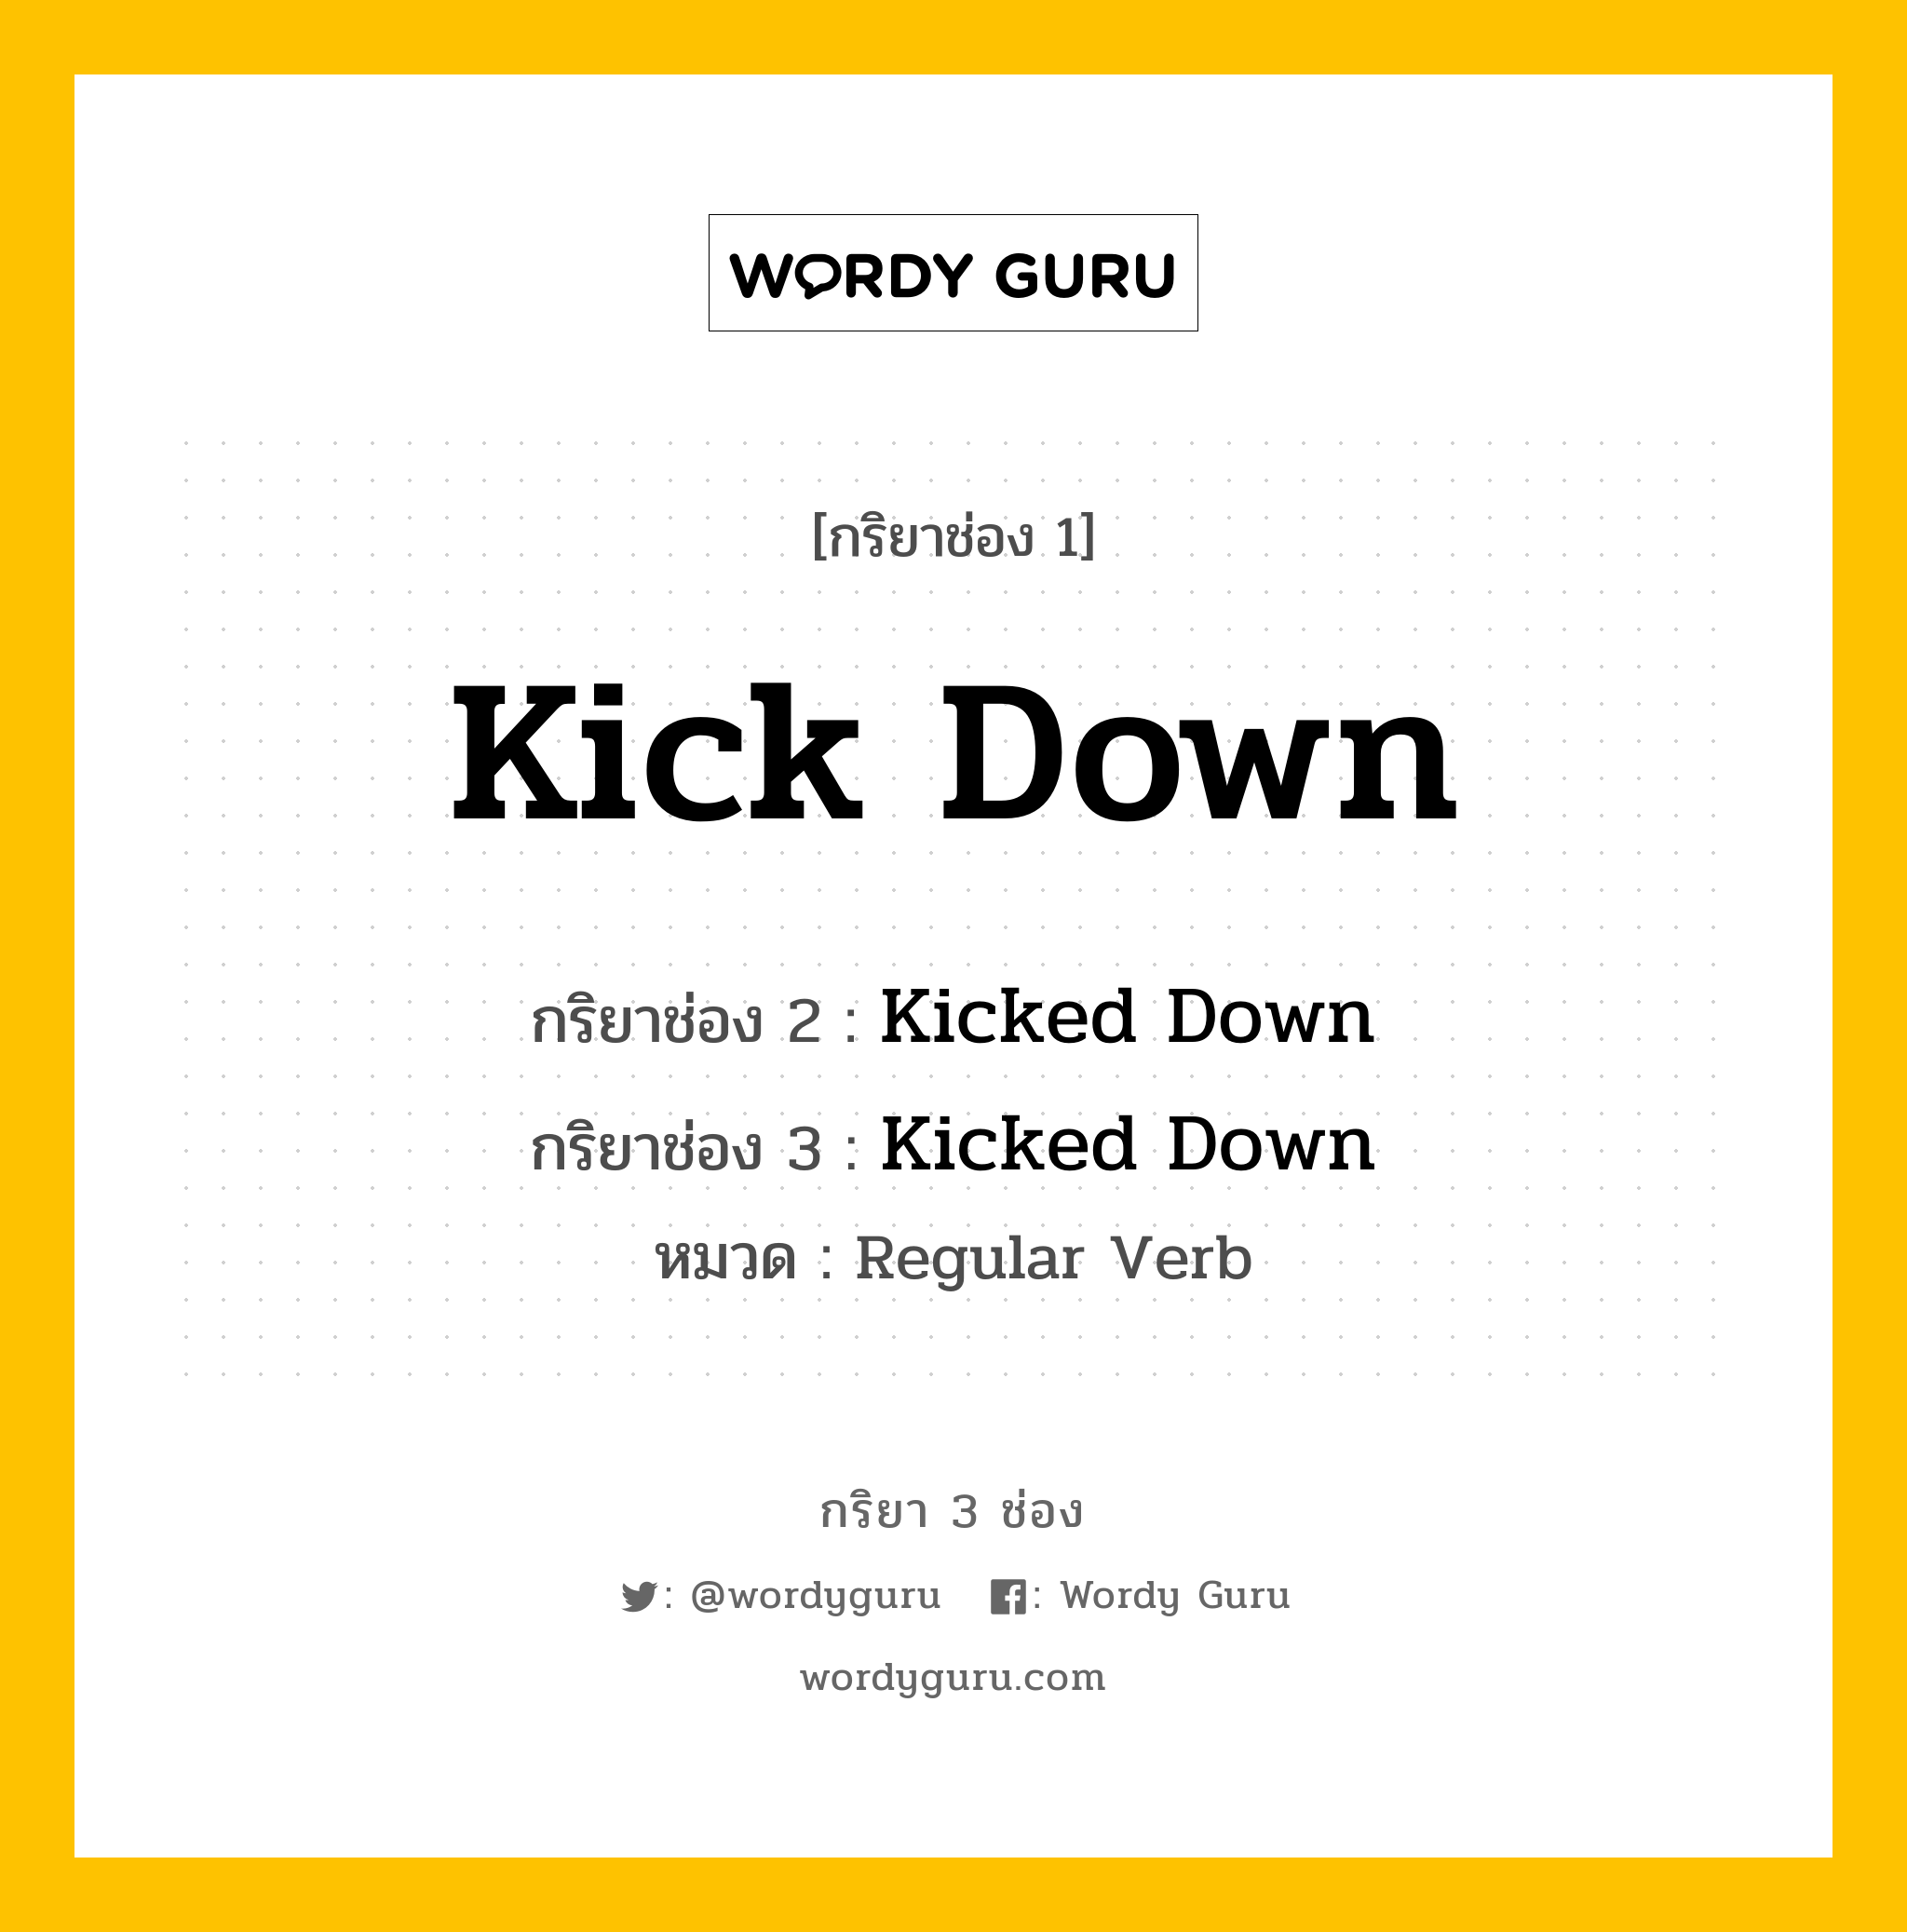 กริยา 3 ช่อง: Kick Down ช่อง 2 Kick Down ช่อง 3 คืออะไร, กริยาช่อง 1 Kick Down กริยาช่อง 2 Kicked Down กริยาช่อง 3 Kicked Down หมวด Regular Verb หมวด Regular Verb